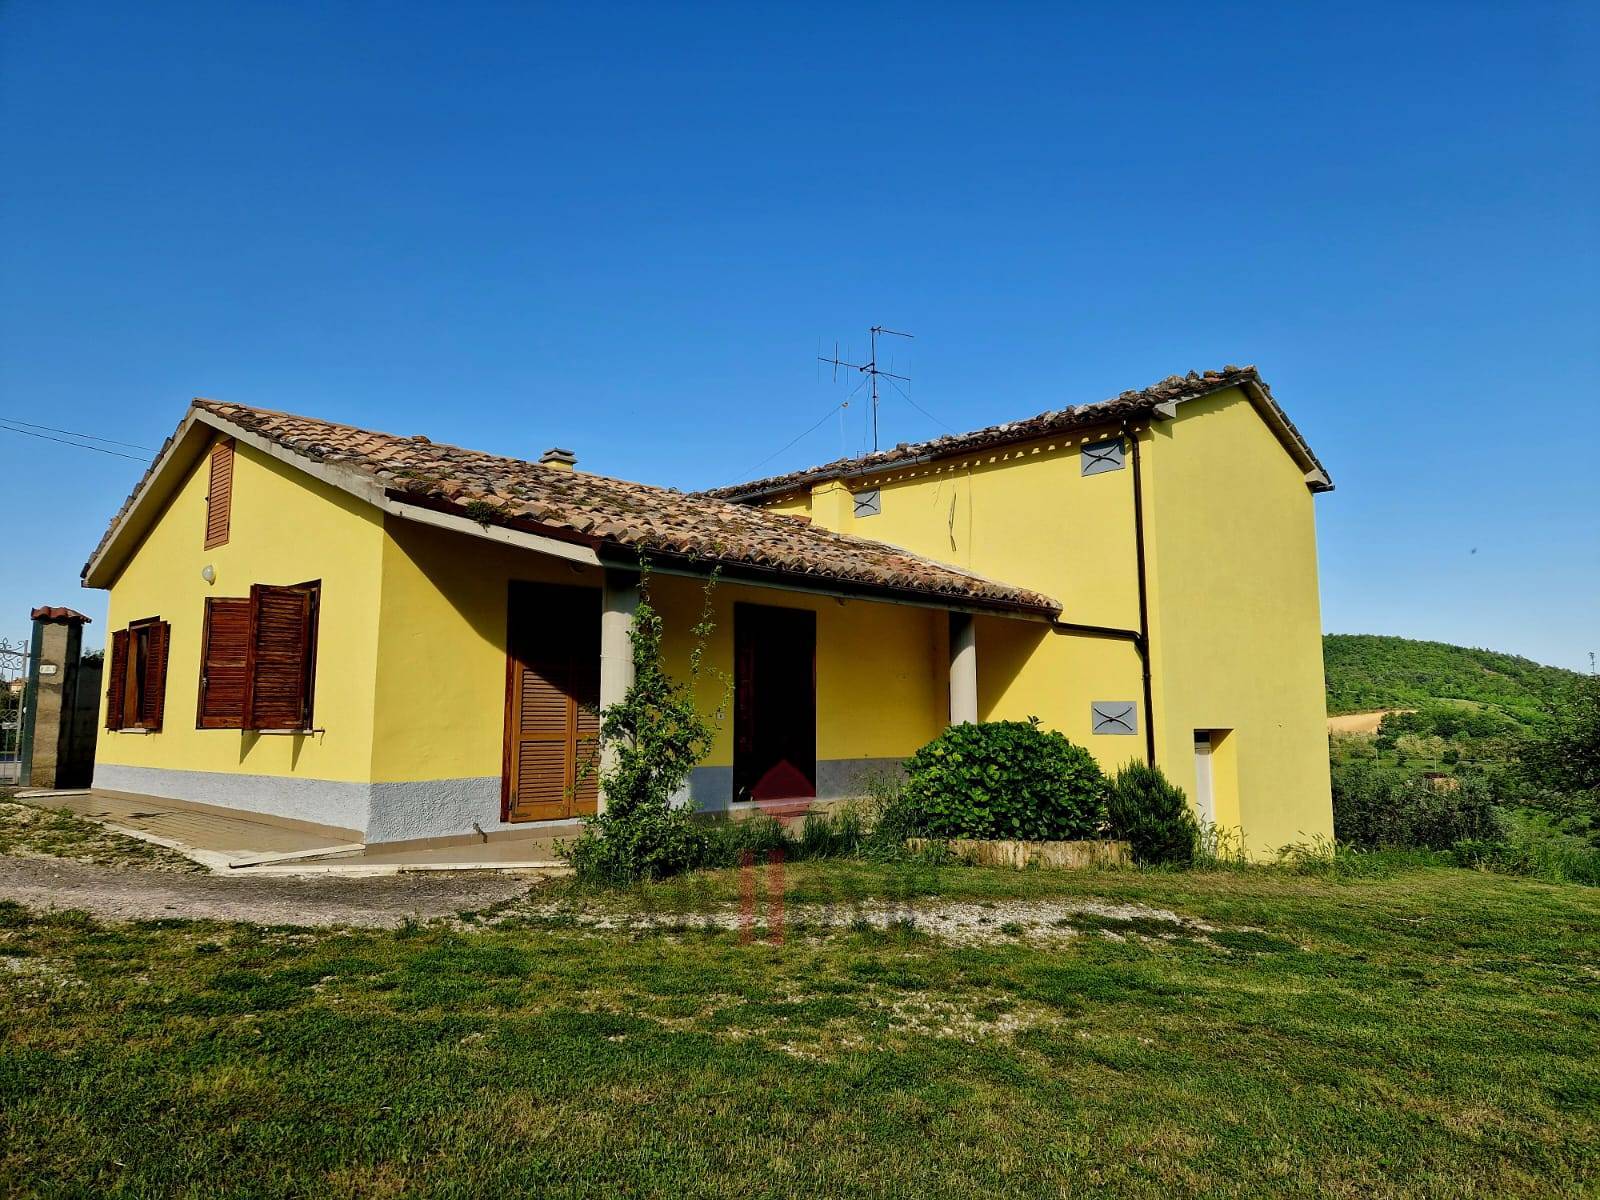 Rustico / Casale in vendita a Civitella del Tronto, 8 locali, prezzo € 110.000 | PortaleAgenzieImmobiliari.it